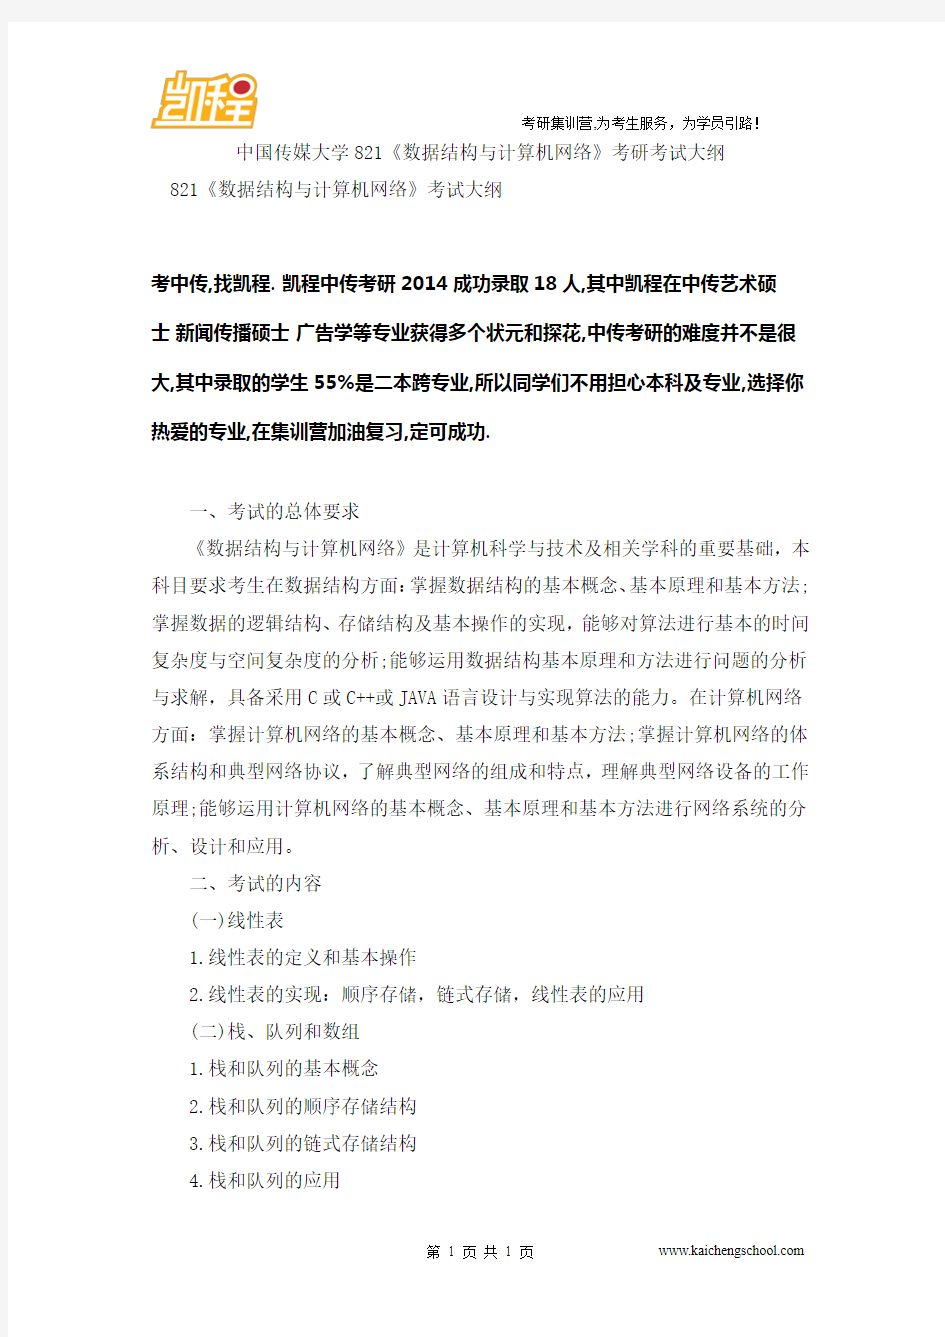 中国传媒大学821《数据结构与计算机网络》考研考试大纲